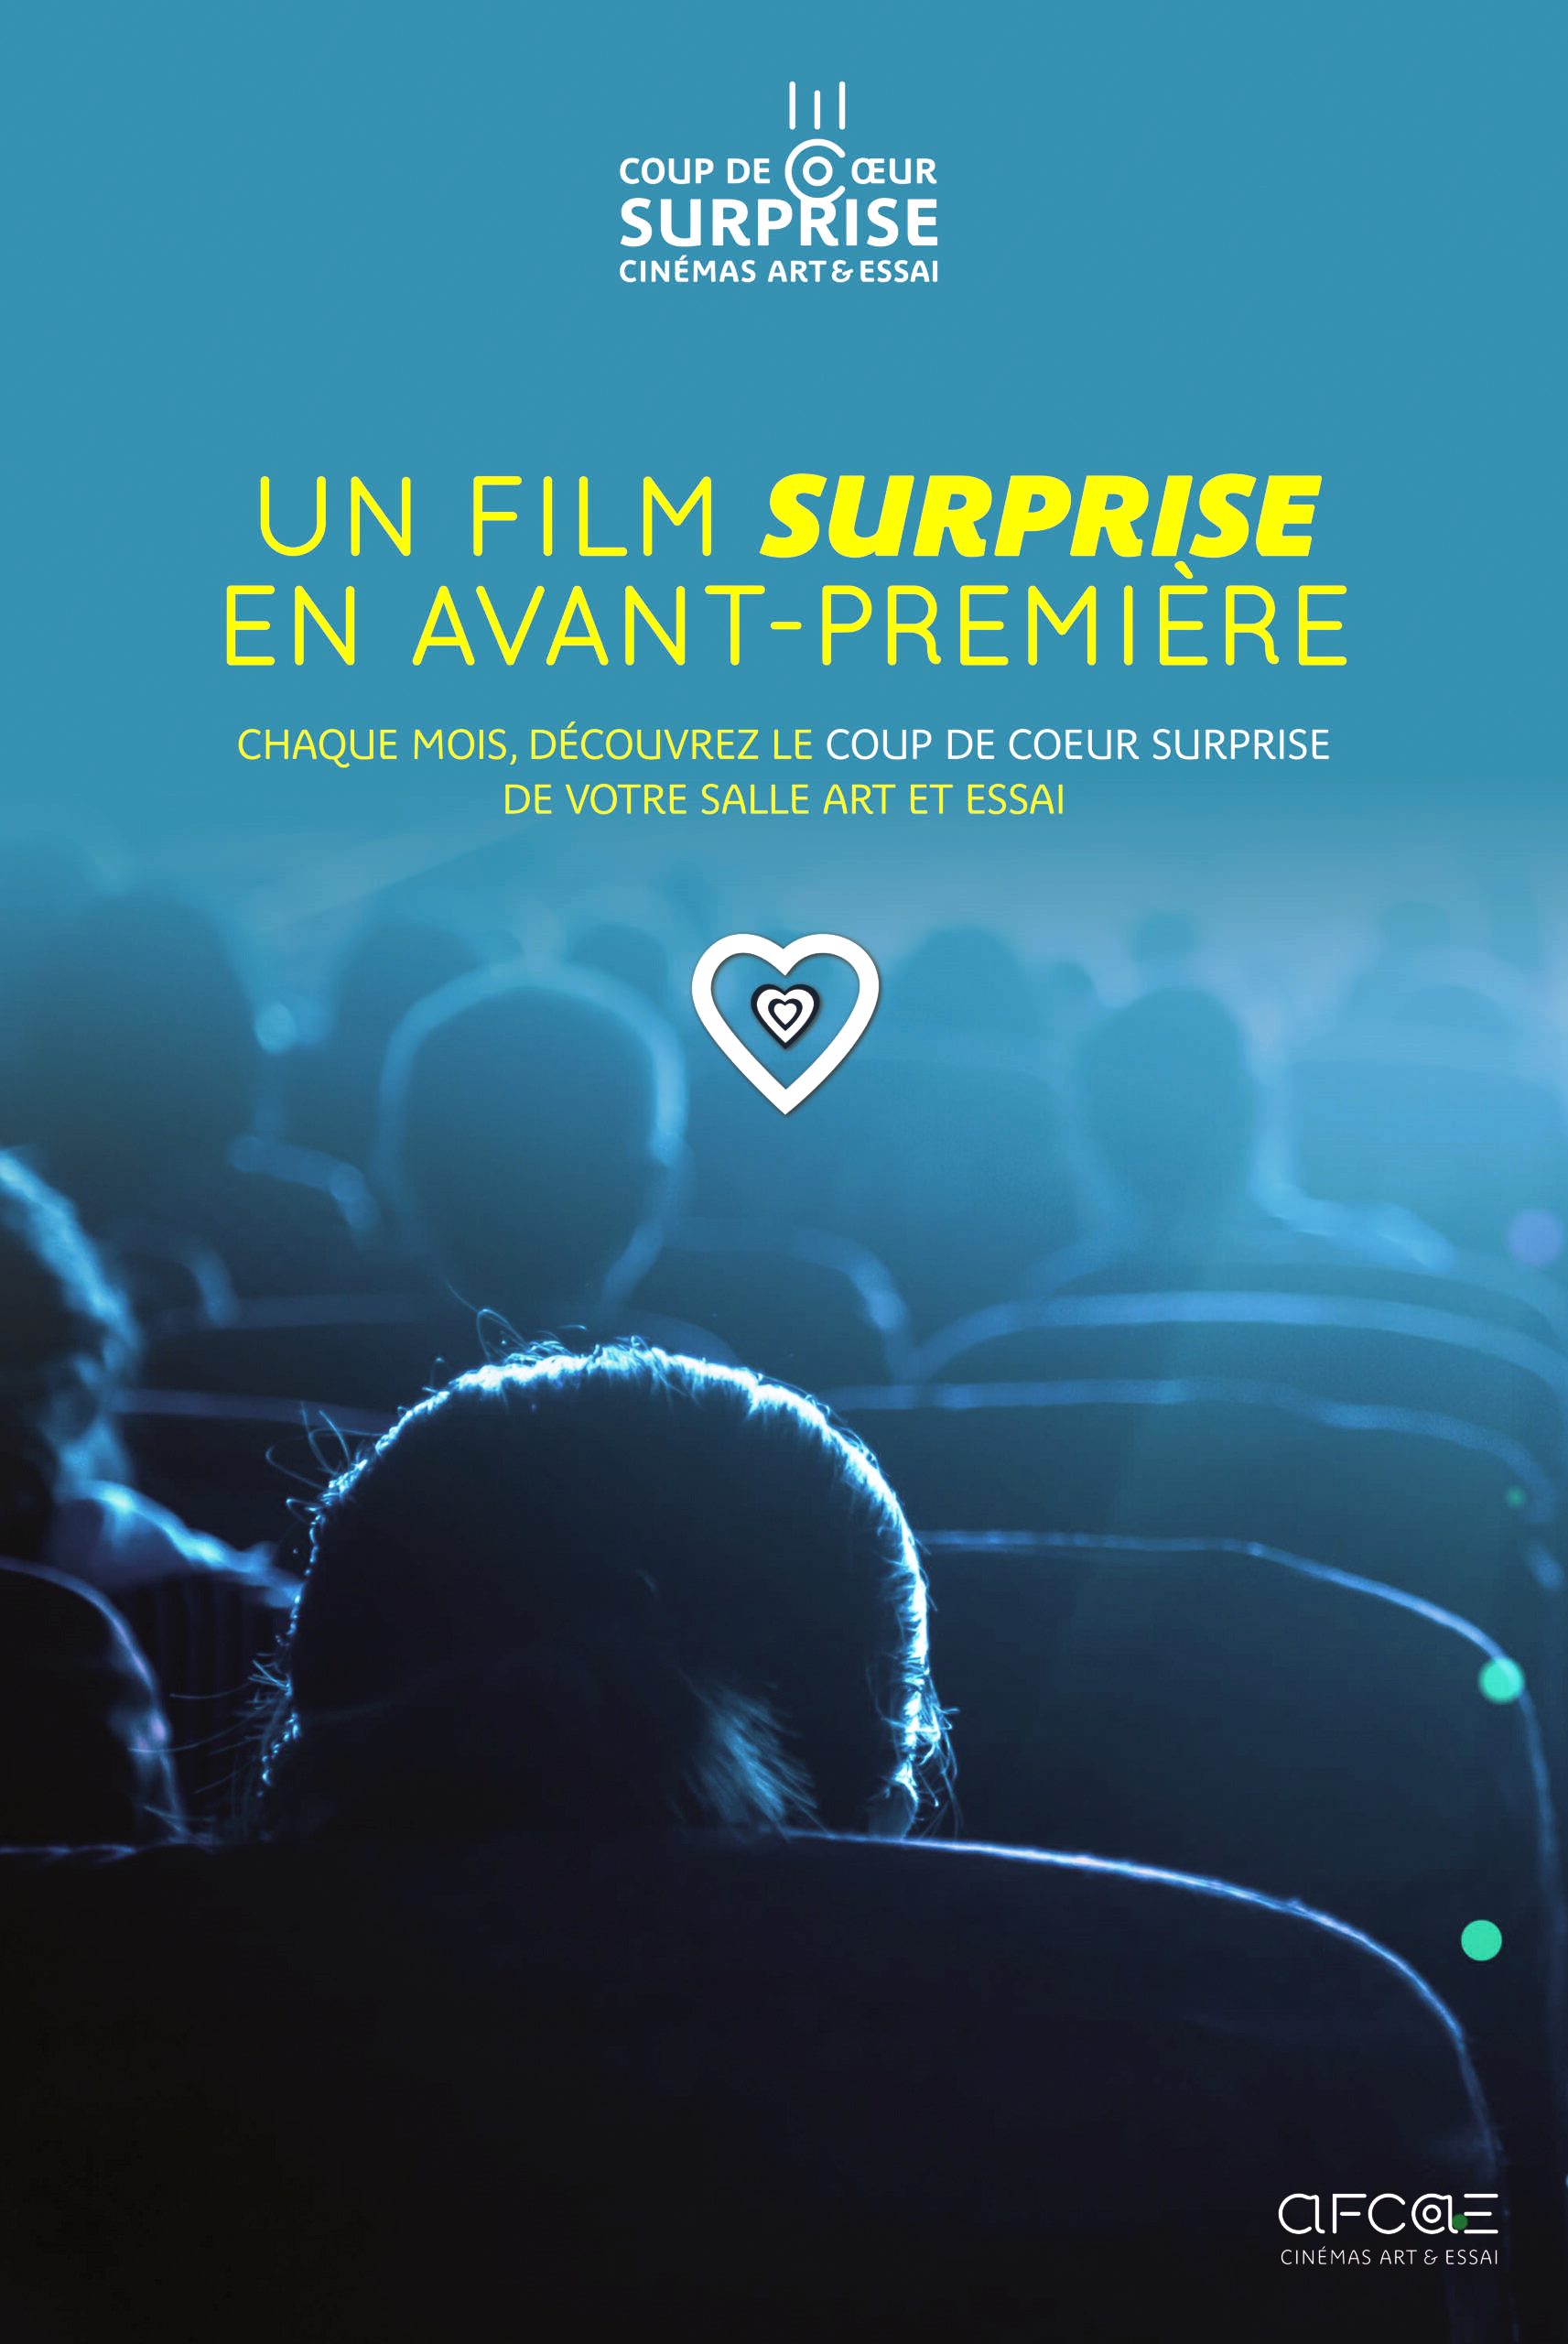 Alle leuke evenementen! : Projection cinéma d'un film Coup de cœur surprise de votre cinéma Art & Essai